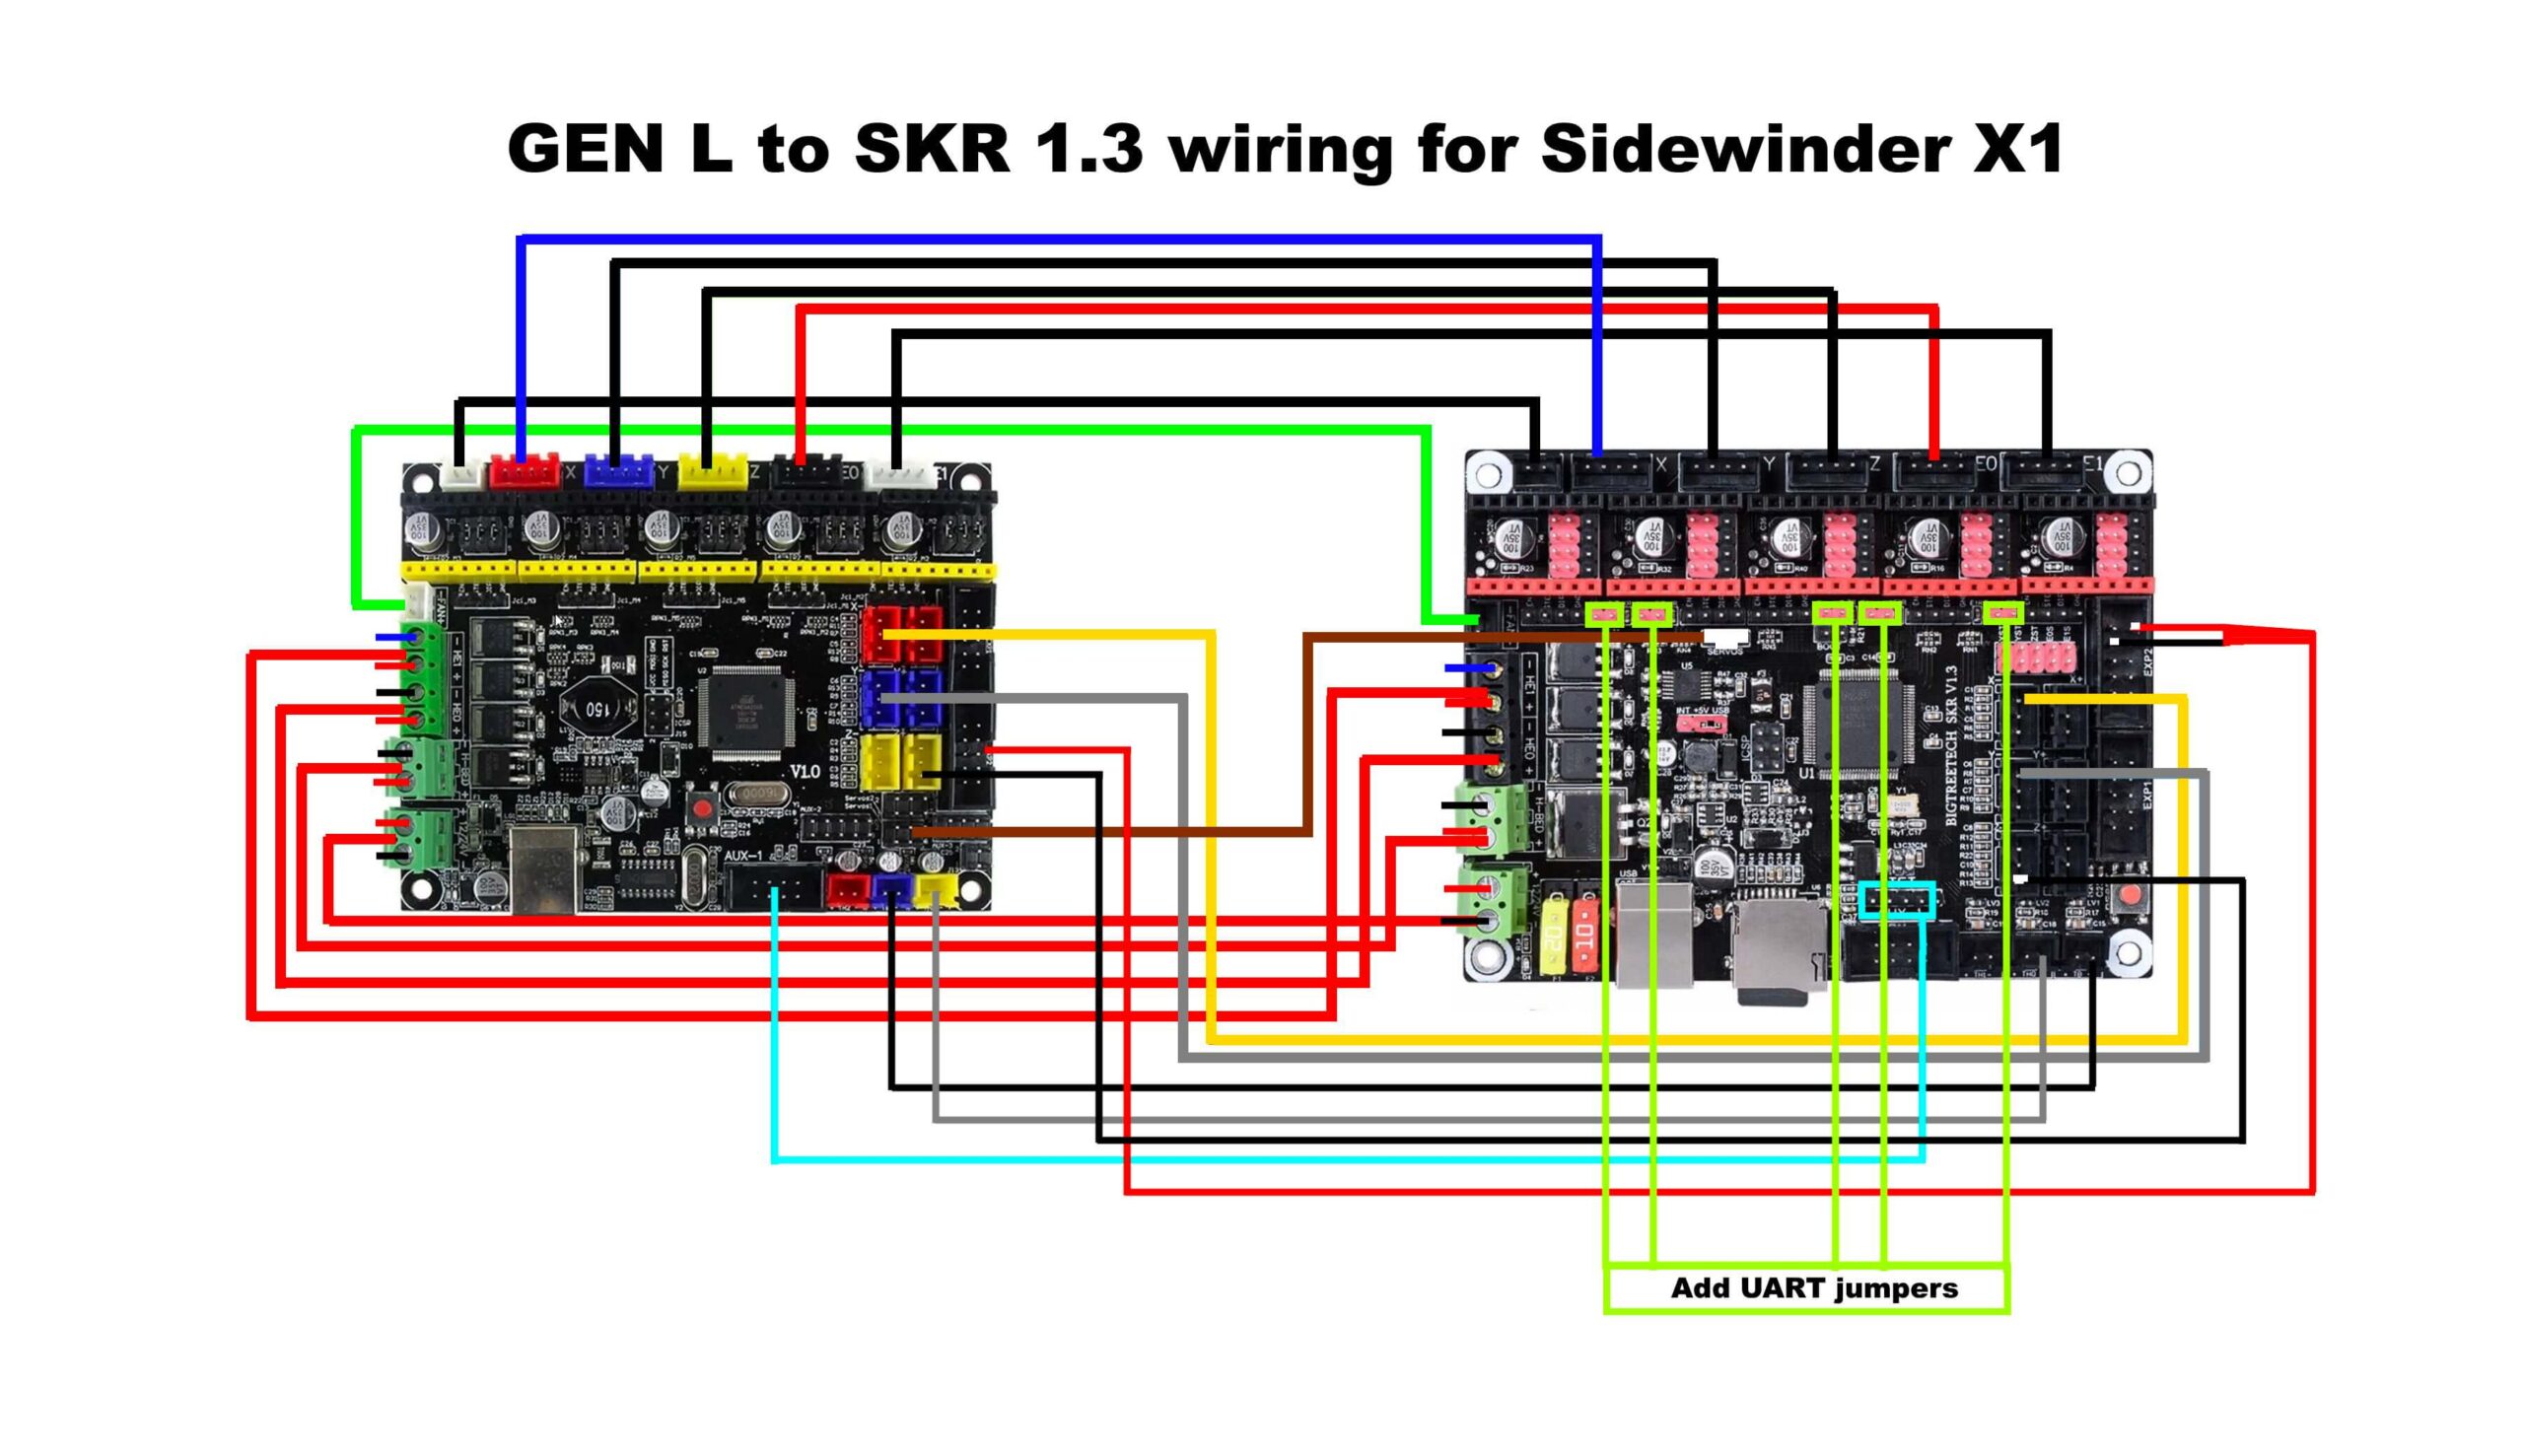 Gen L to SKR 1.3 wiring scheme for Sidewinder X1